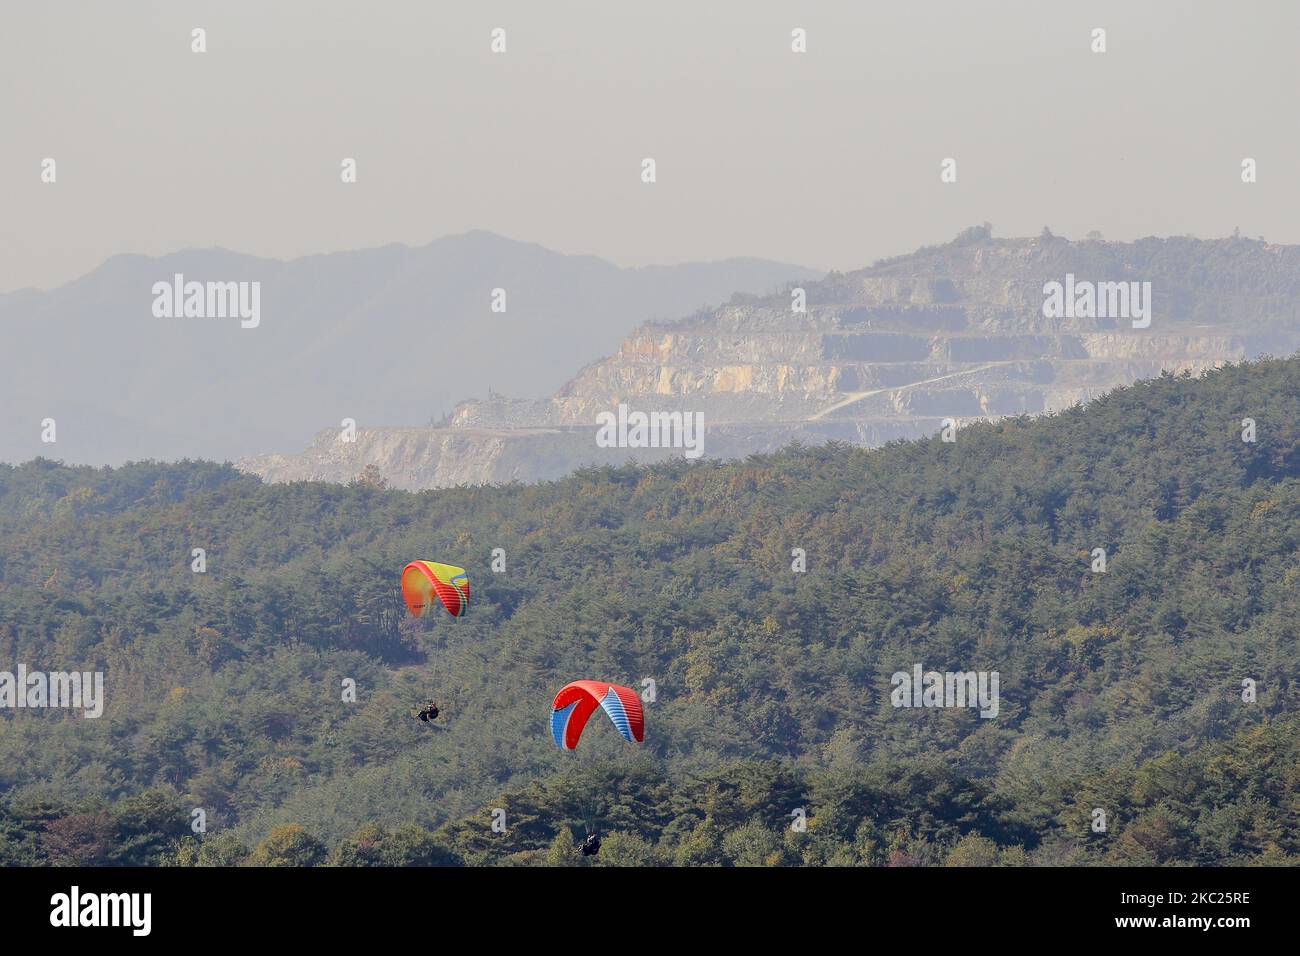 Paragliding Pilotflug am Herbsthimmel in Danyang, Südkorea, am 19. Oktober 2020. Die Temperaturen in Seoul fielen am Donnerstagmorgen auf 6,6 C, was das kälteste Wetter in diesem Herbst markiert, teilte der nationale Wetterdienst mit. (Foto von Seung-il Ryu/NurPhoto) Stockfoto